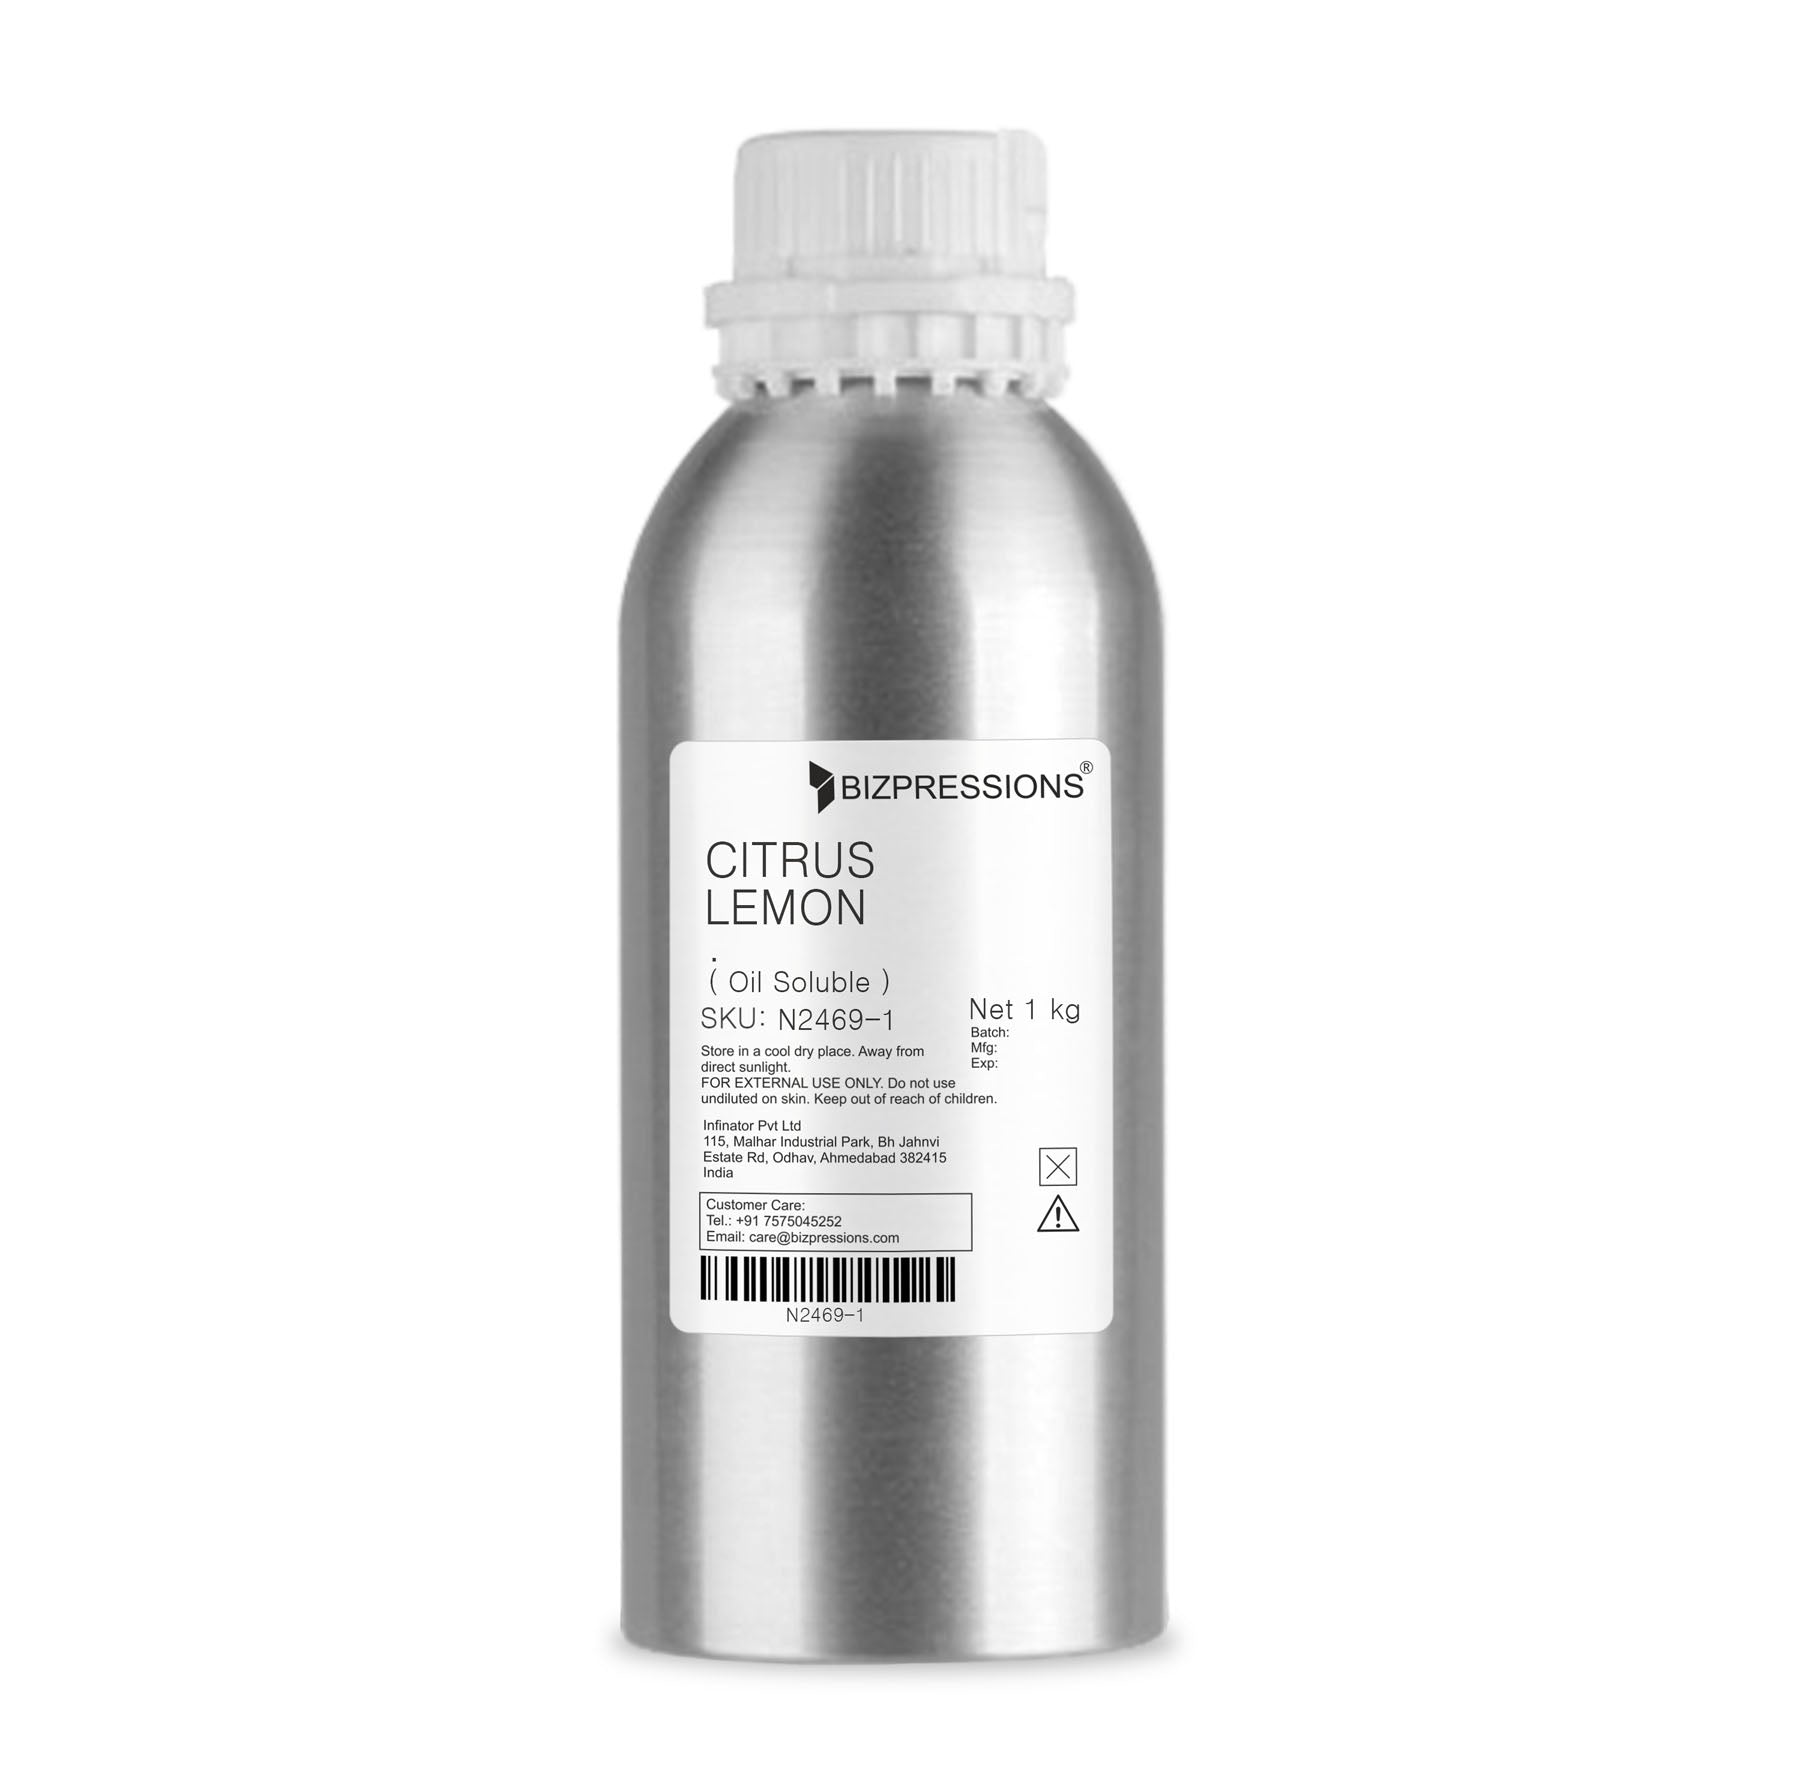 CITRUS LEMON - Fragrance ( Oil Soluble ) - 1 kg